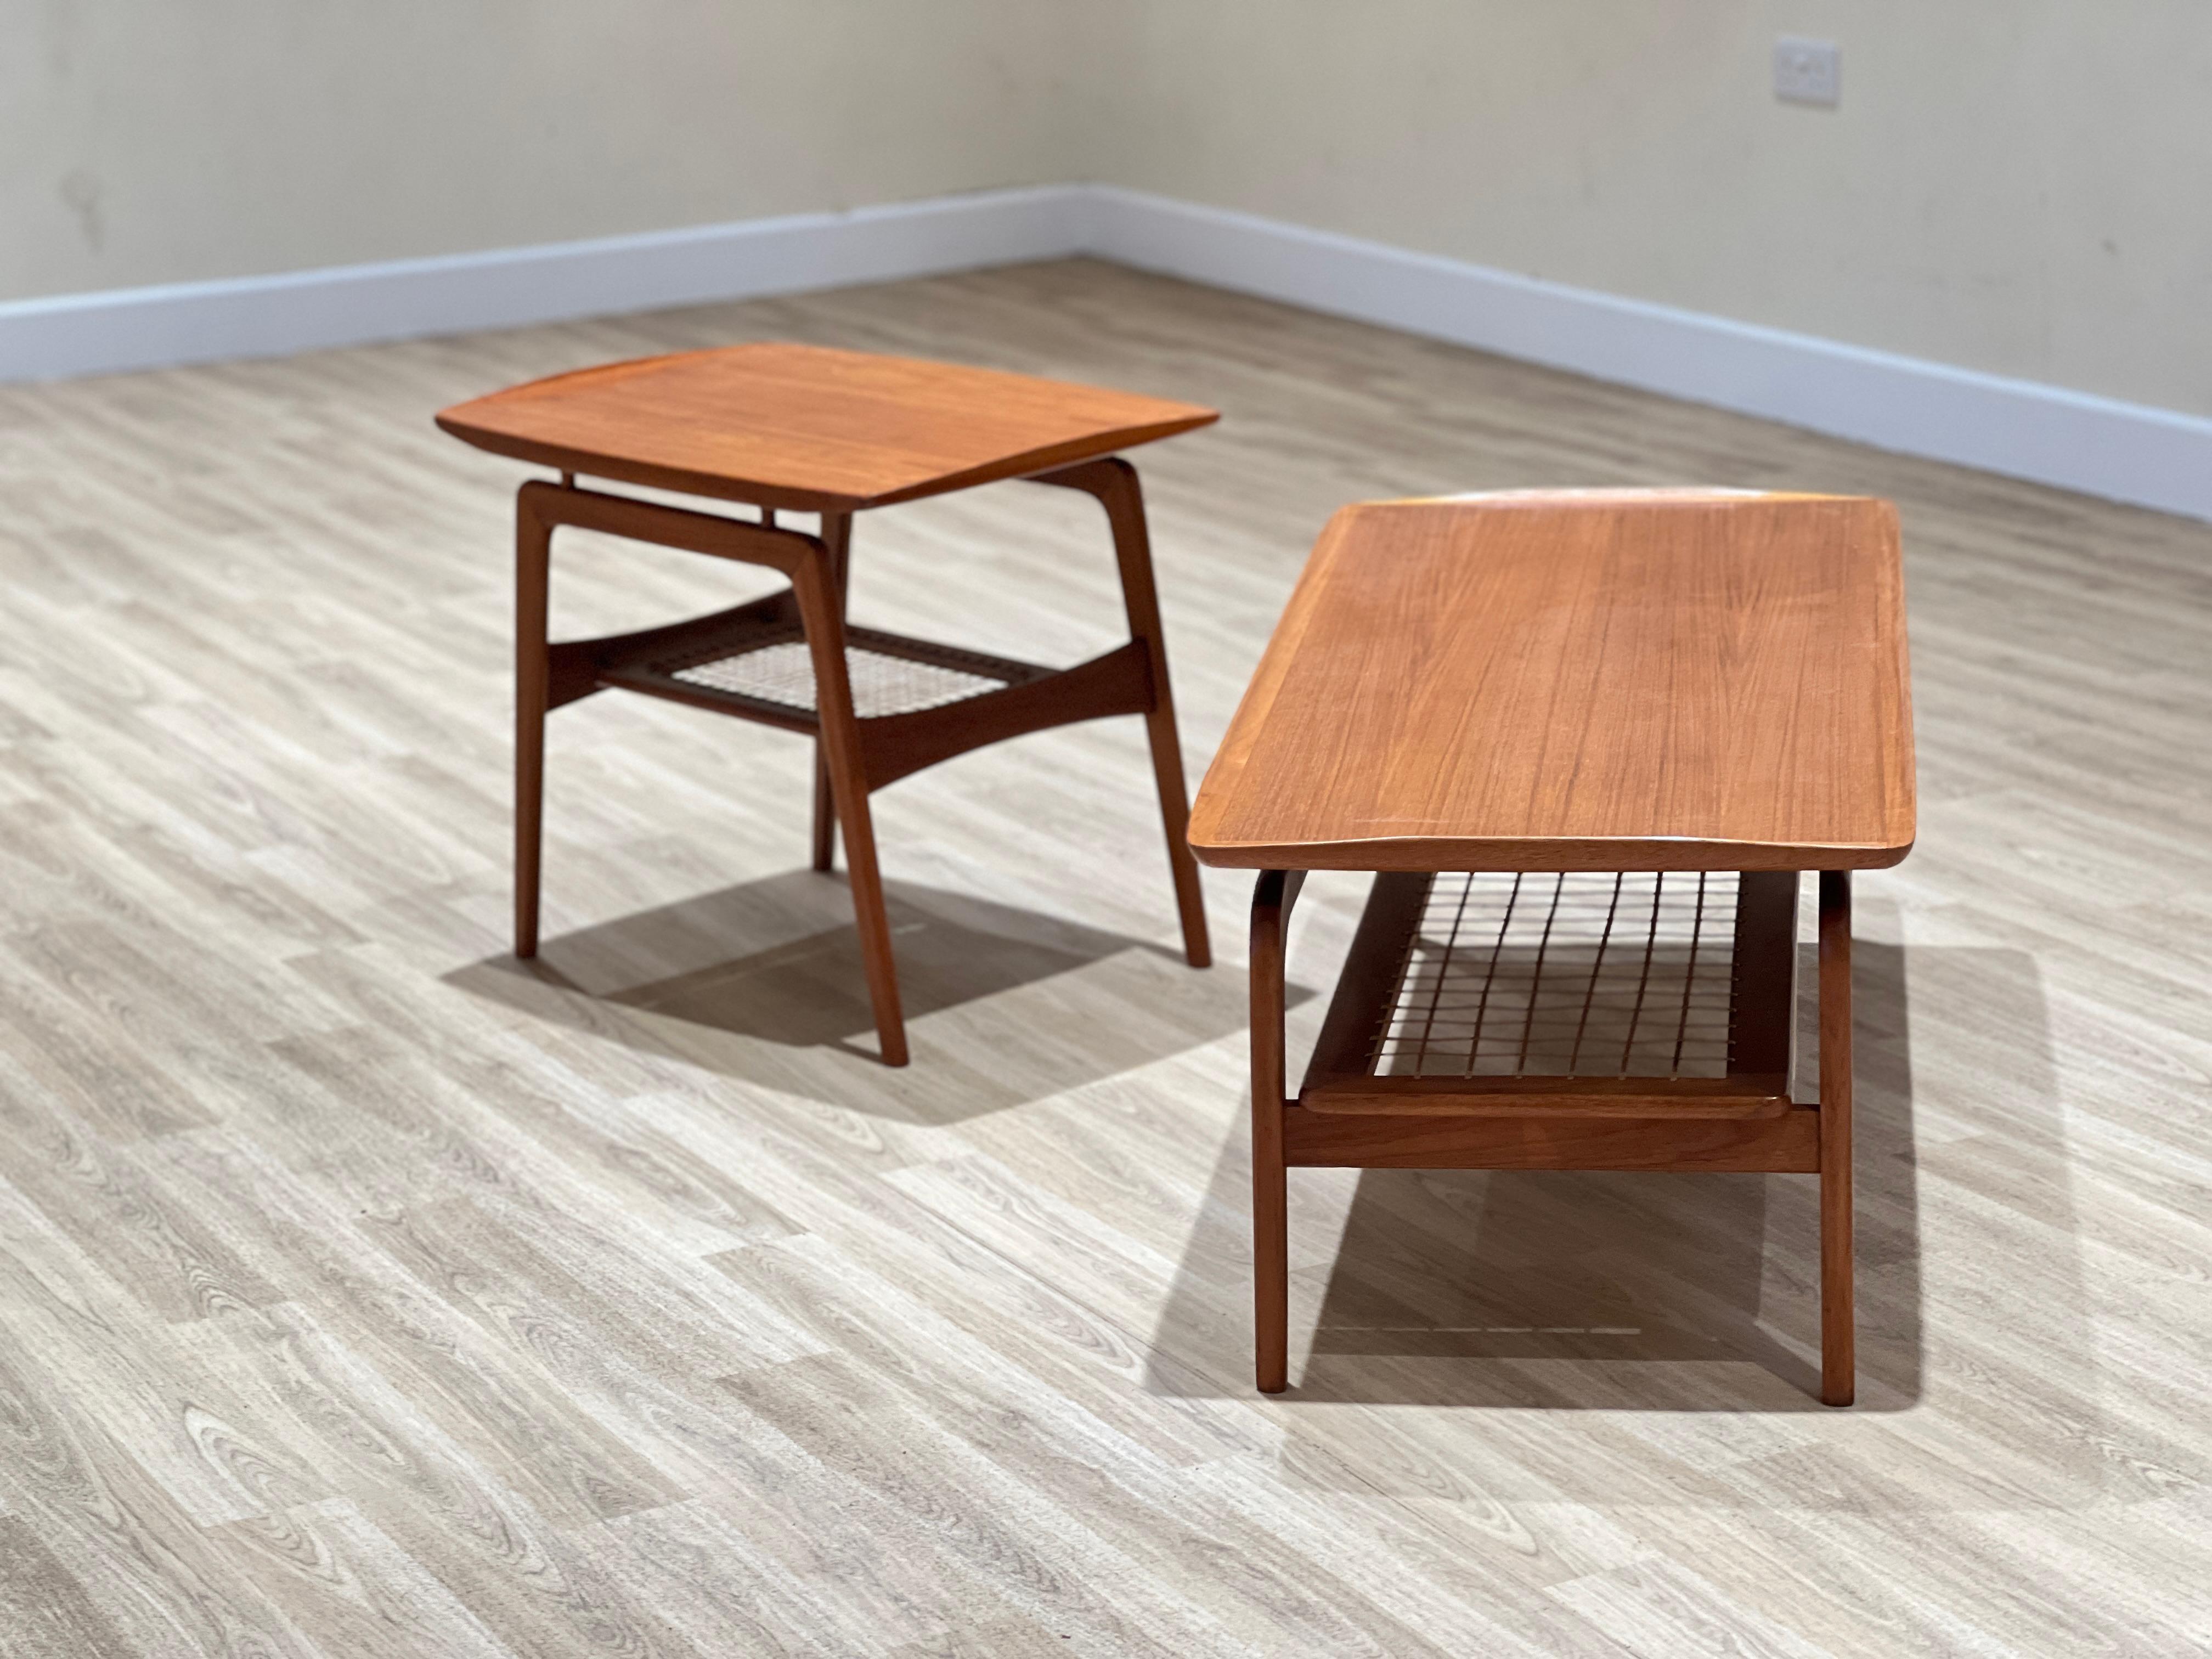 Cette table basse magnifiquement conçue par Arne Hovmand Eleg est un chef-d'œuvre d'artisanat et d'élégance. Fabriqué au Danemark dans les années 1960, il a été créé pour le célèbre ébéniste Mogens Kold. La table est dotée d'une superbe crémaillère